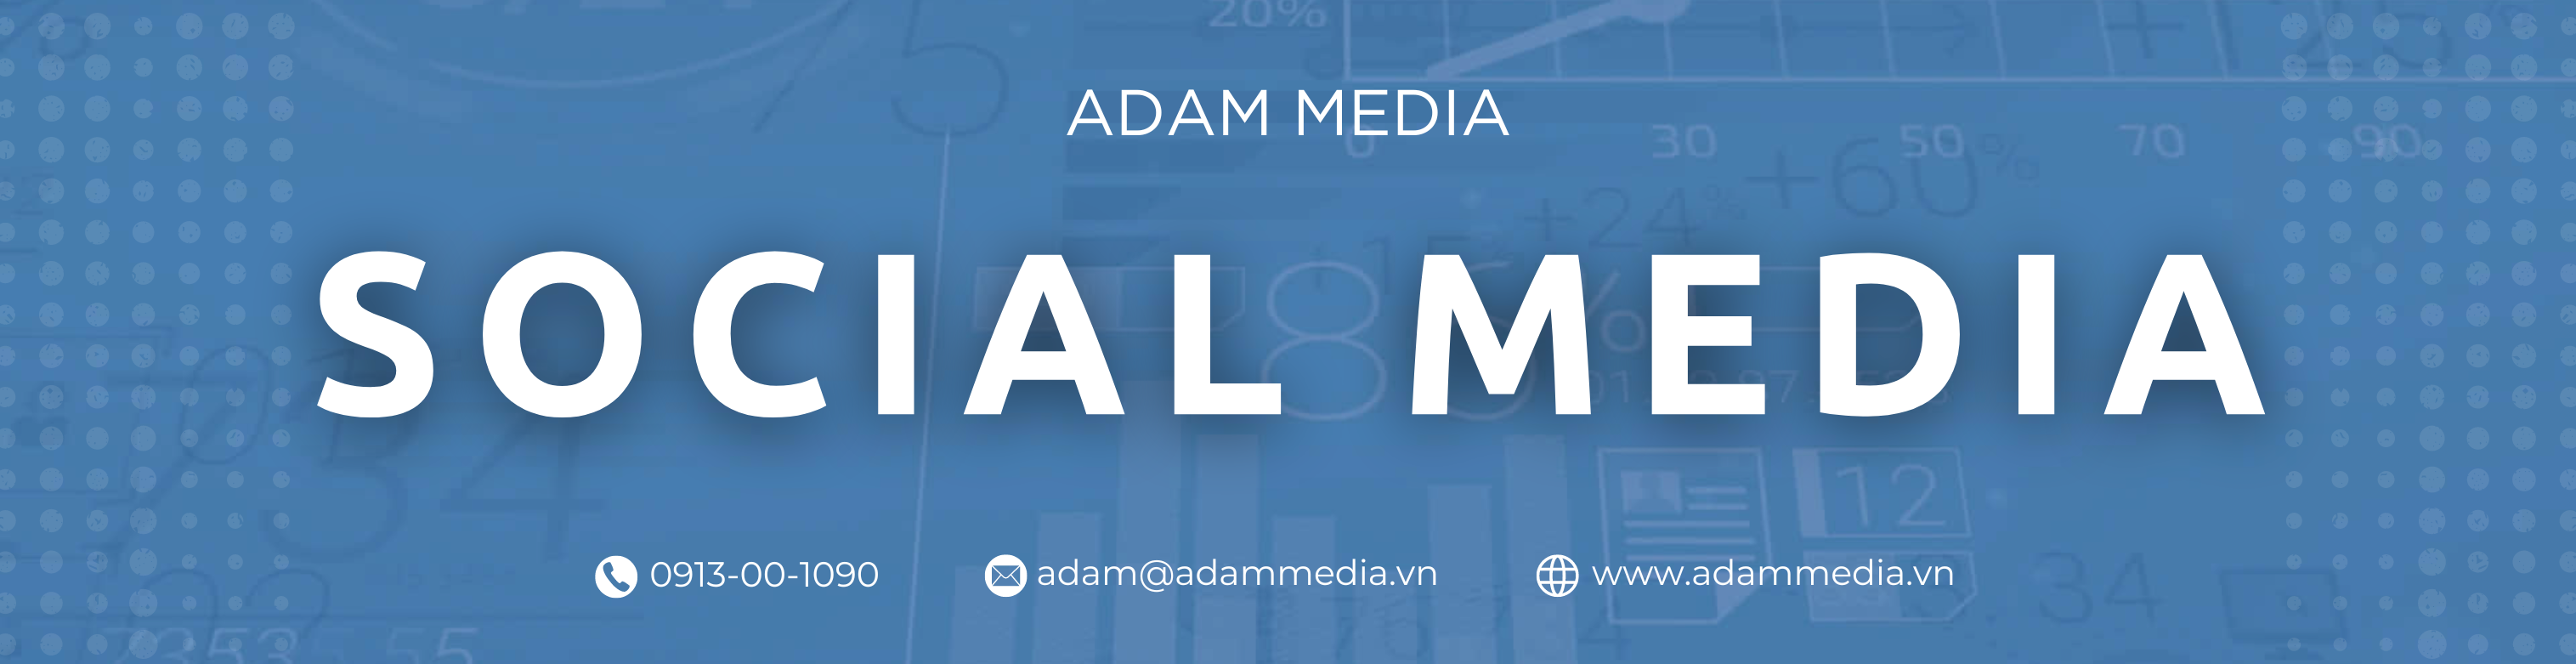 Social Media - Adam Media